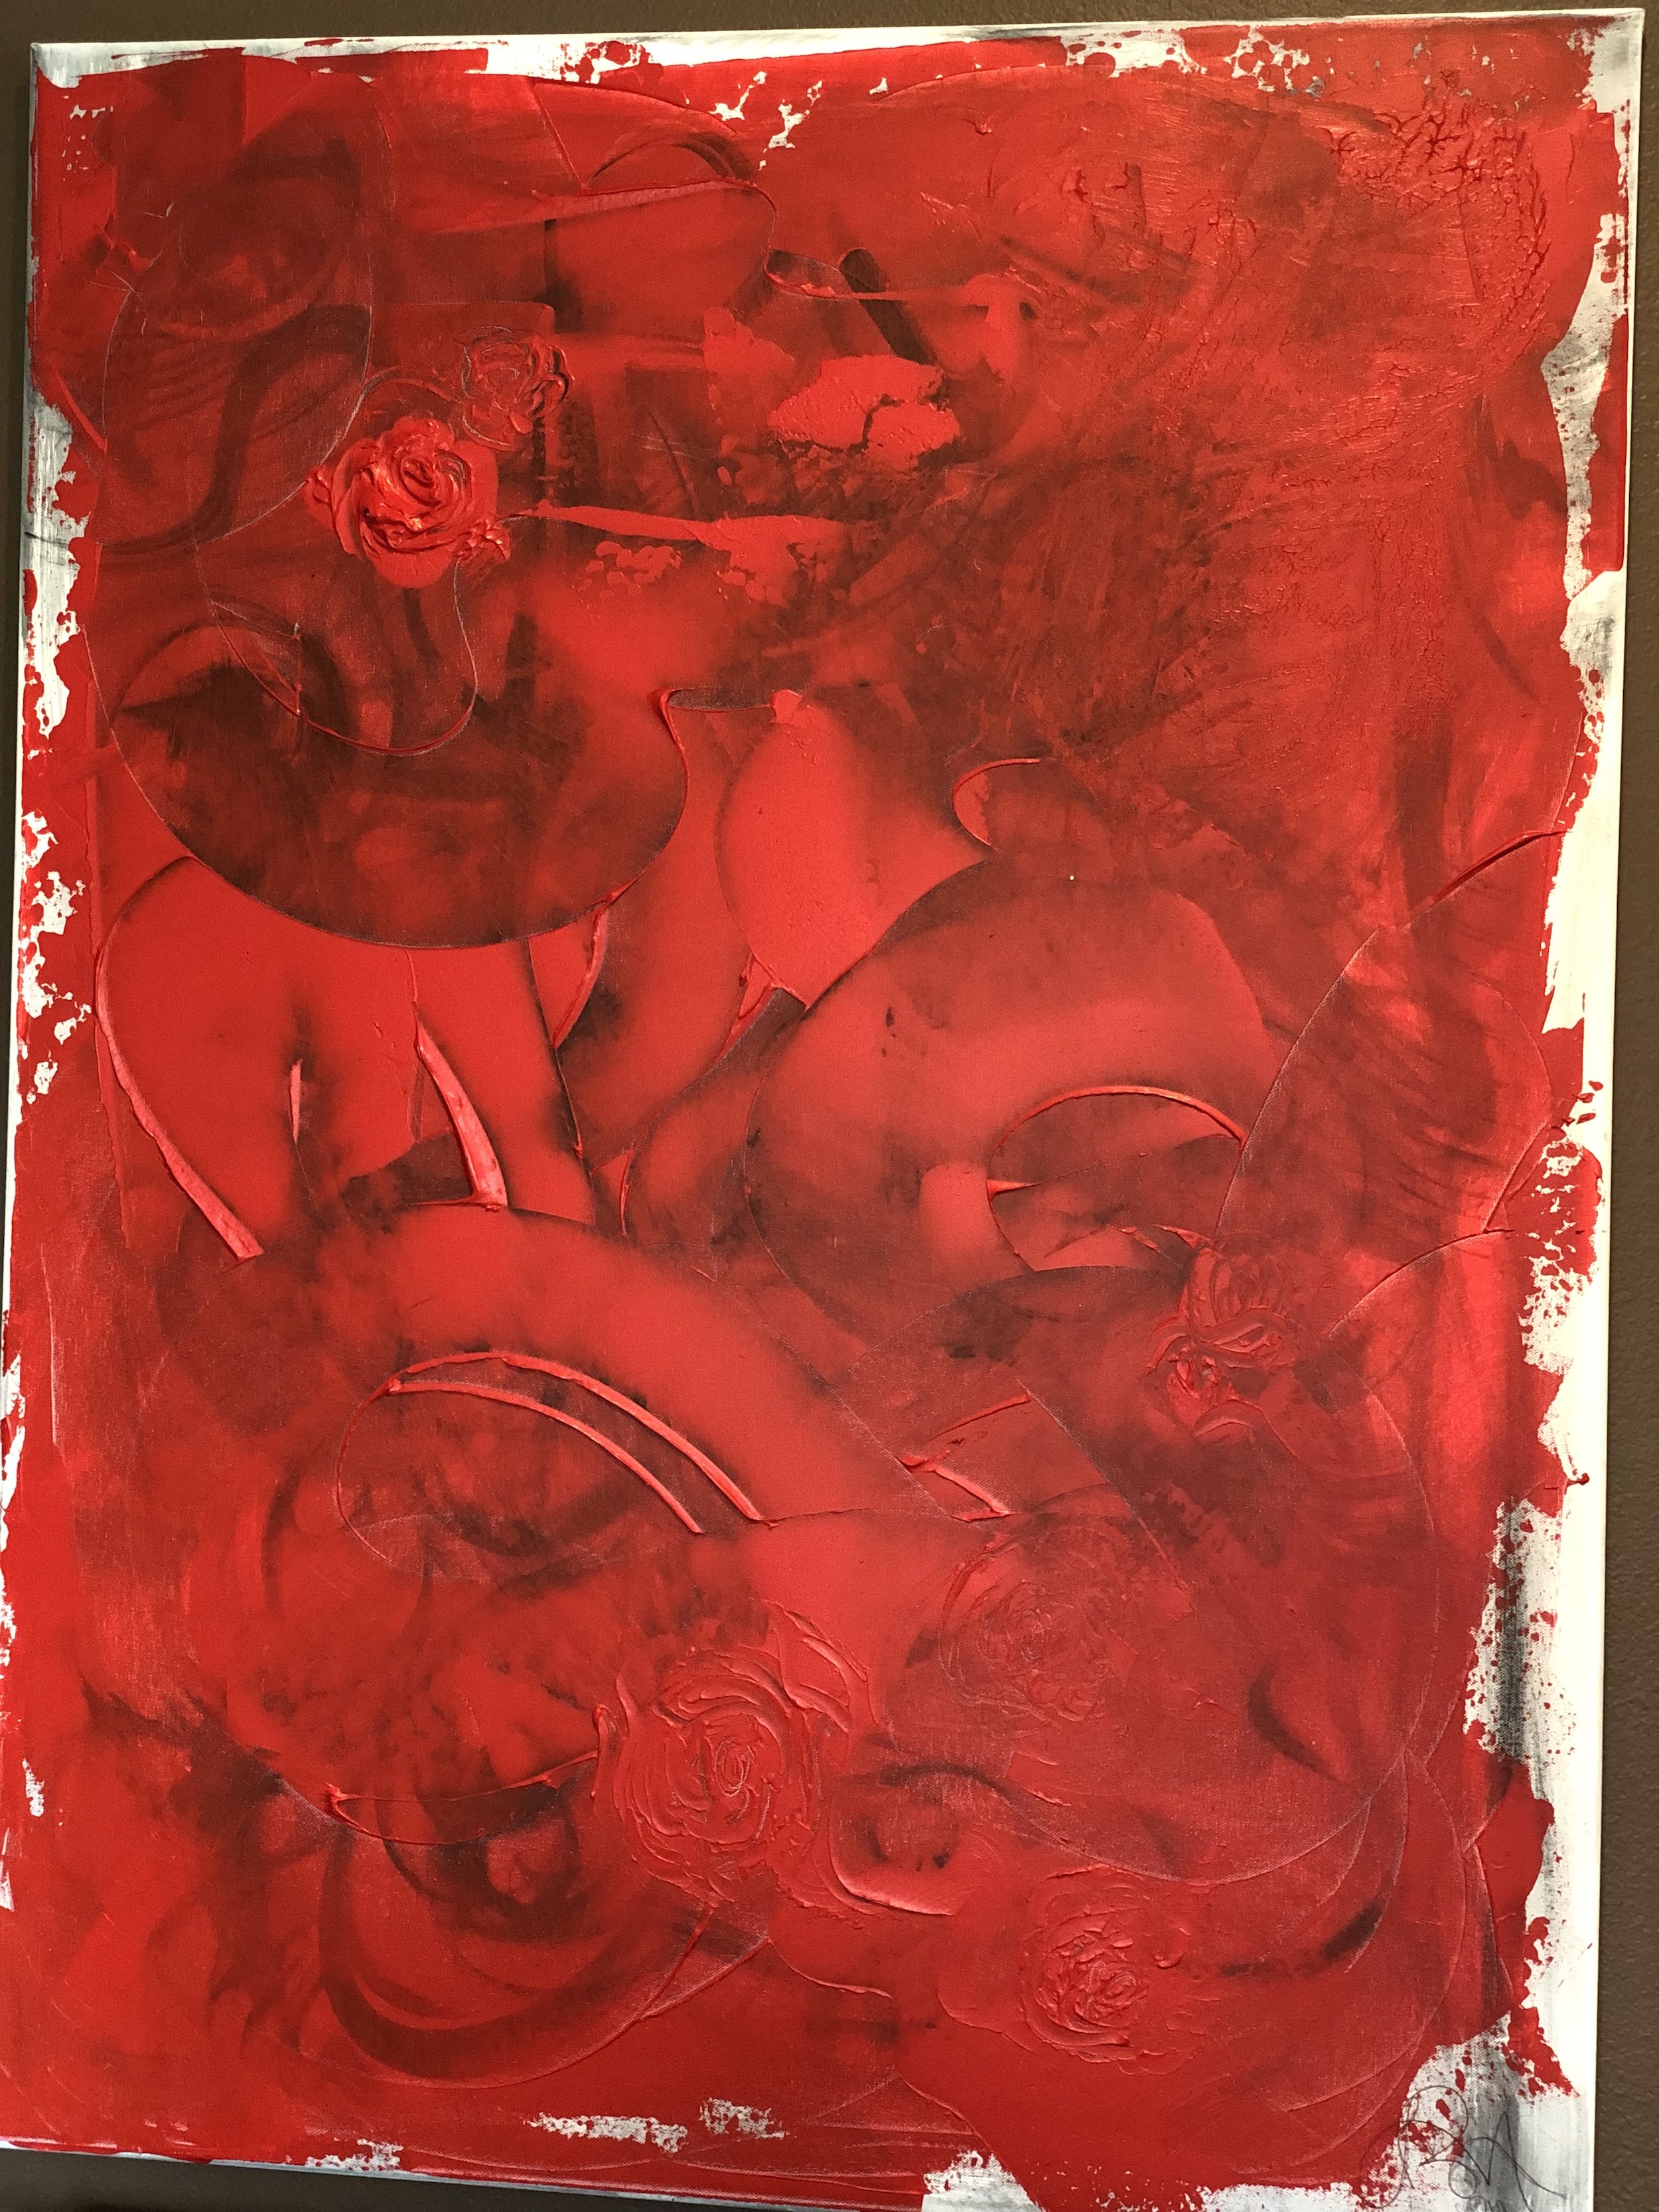 Lo Mar's Art - Red Rose (Original Painting)